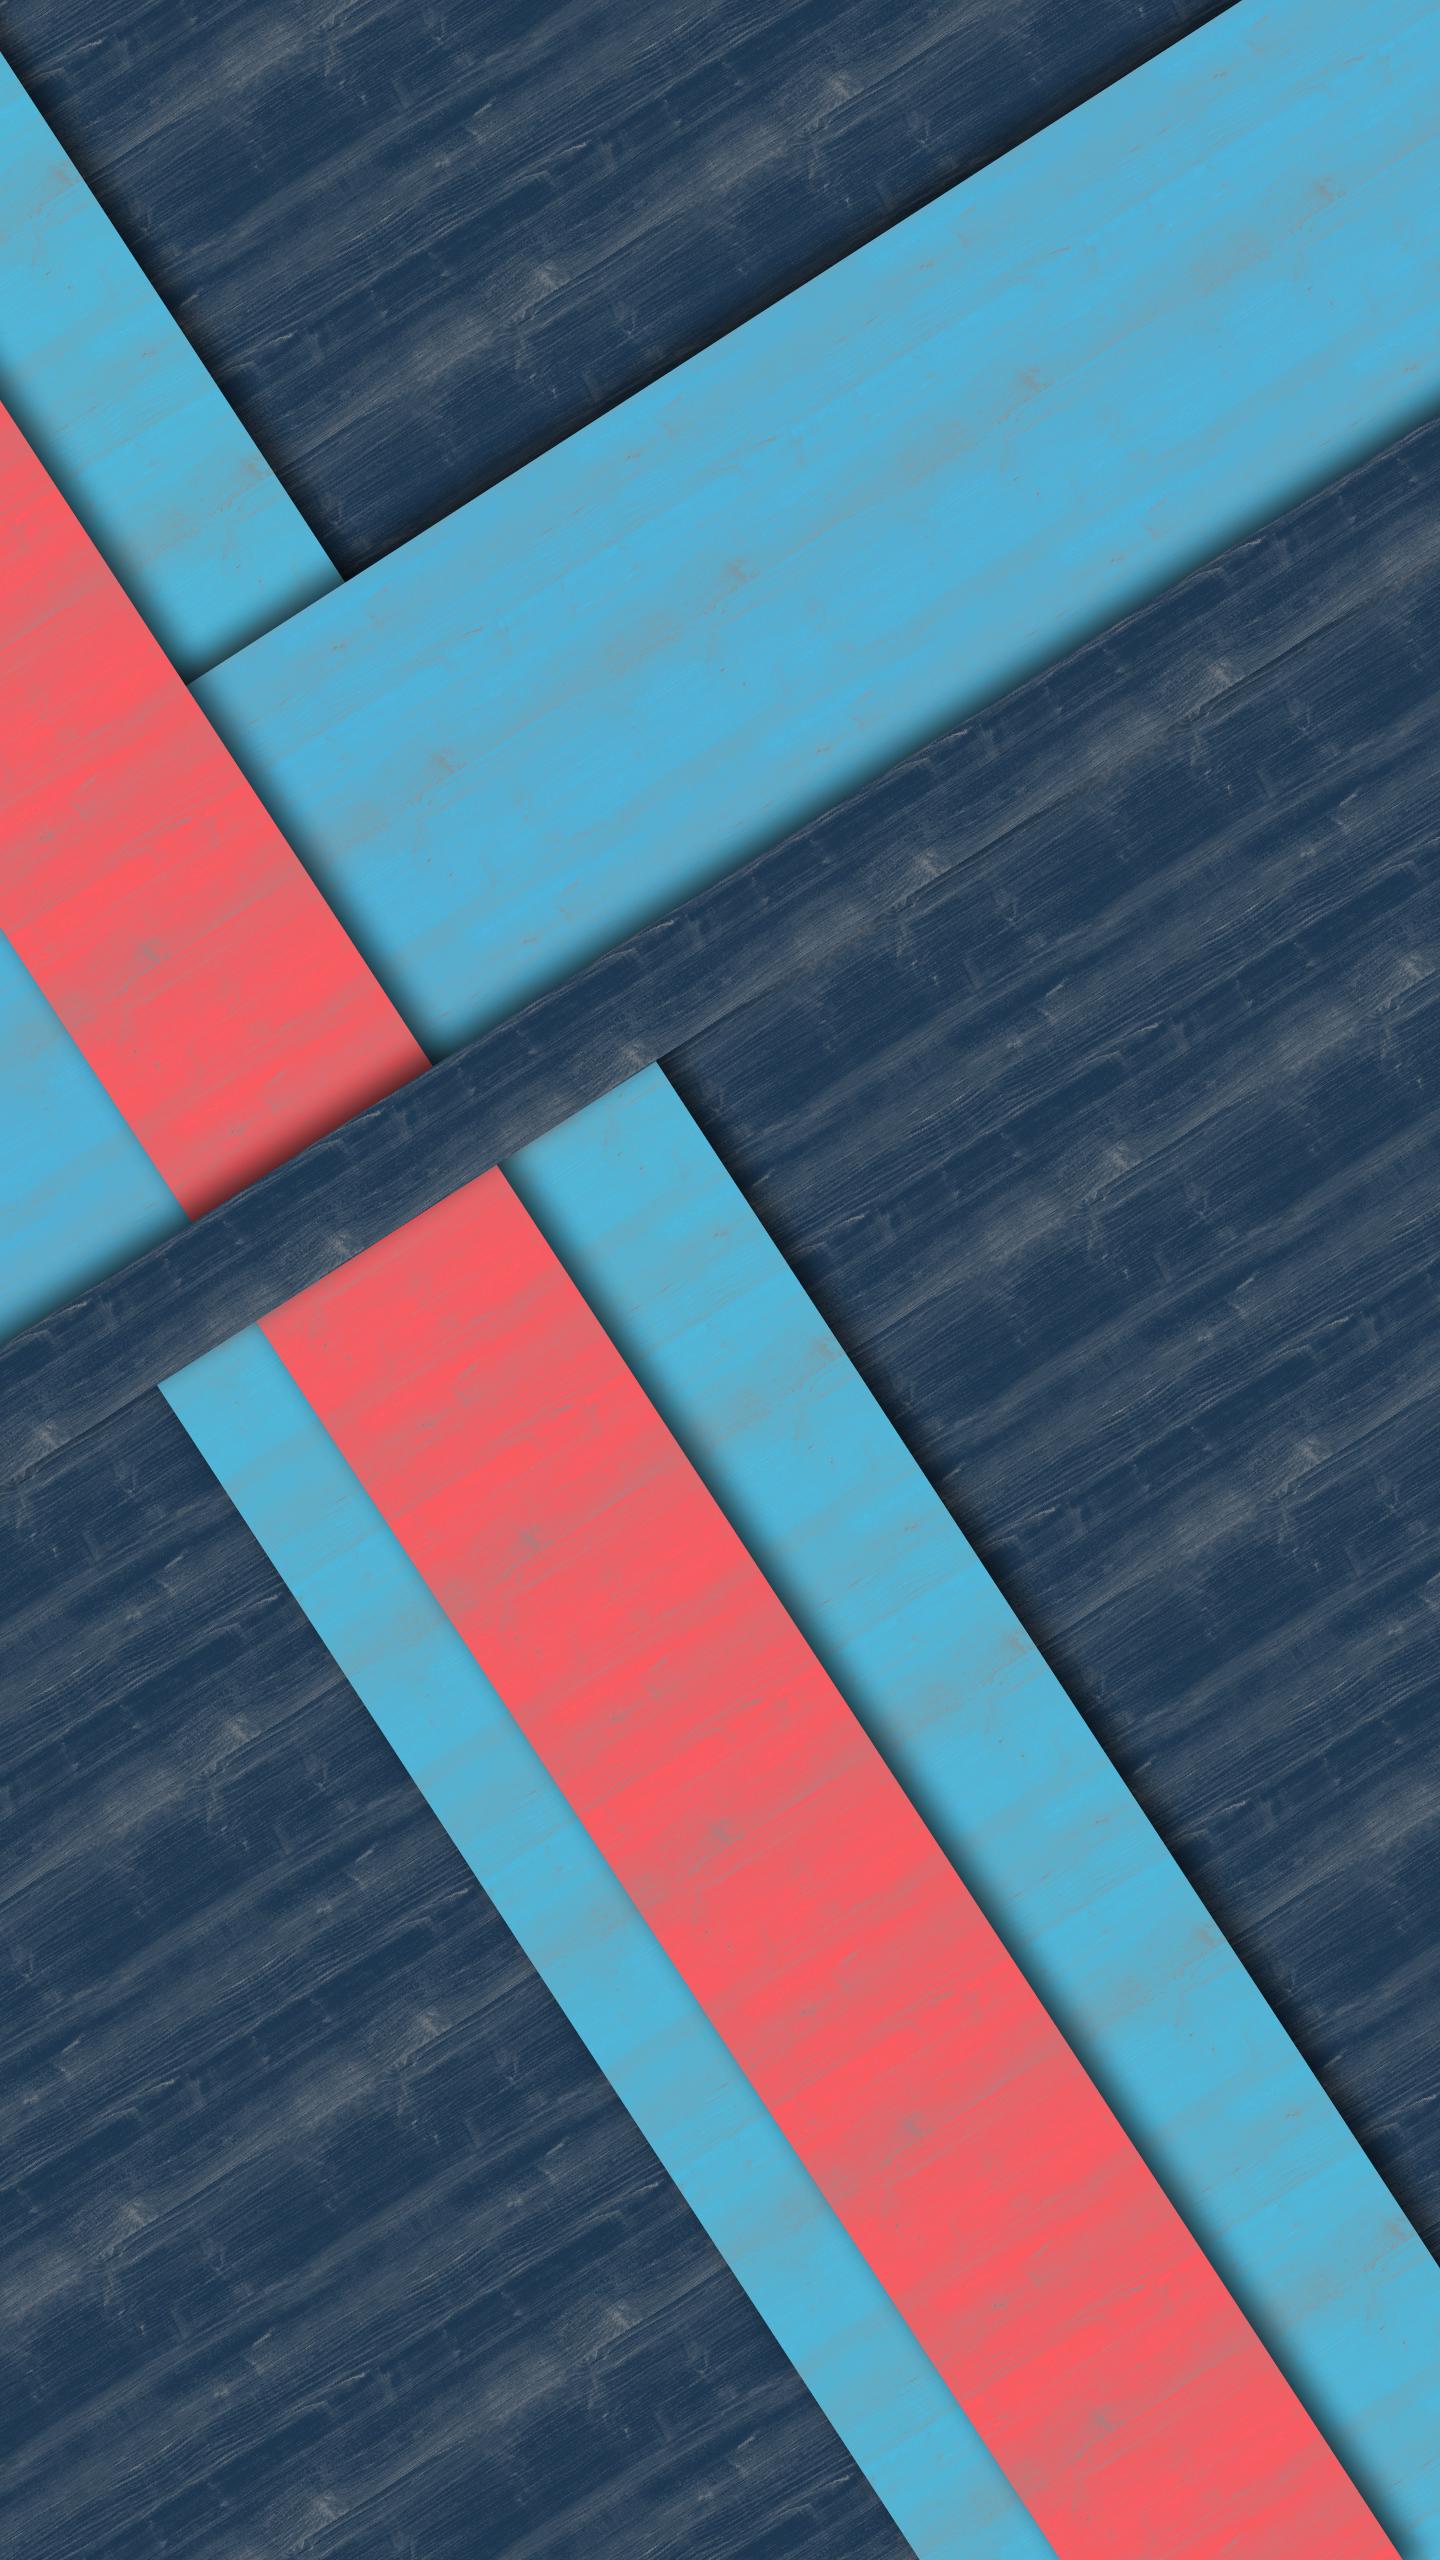 nexus 6p stock wallpaper,blau,türkis,produkt,aqua,linie